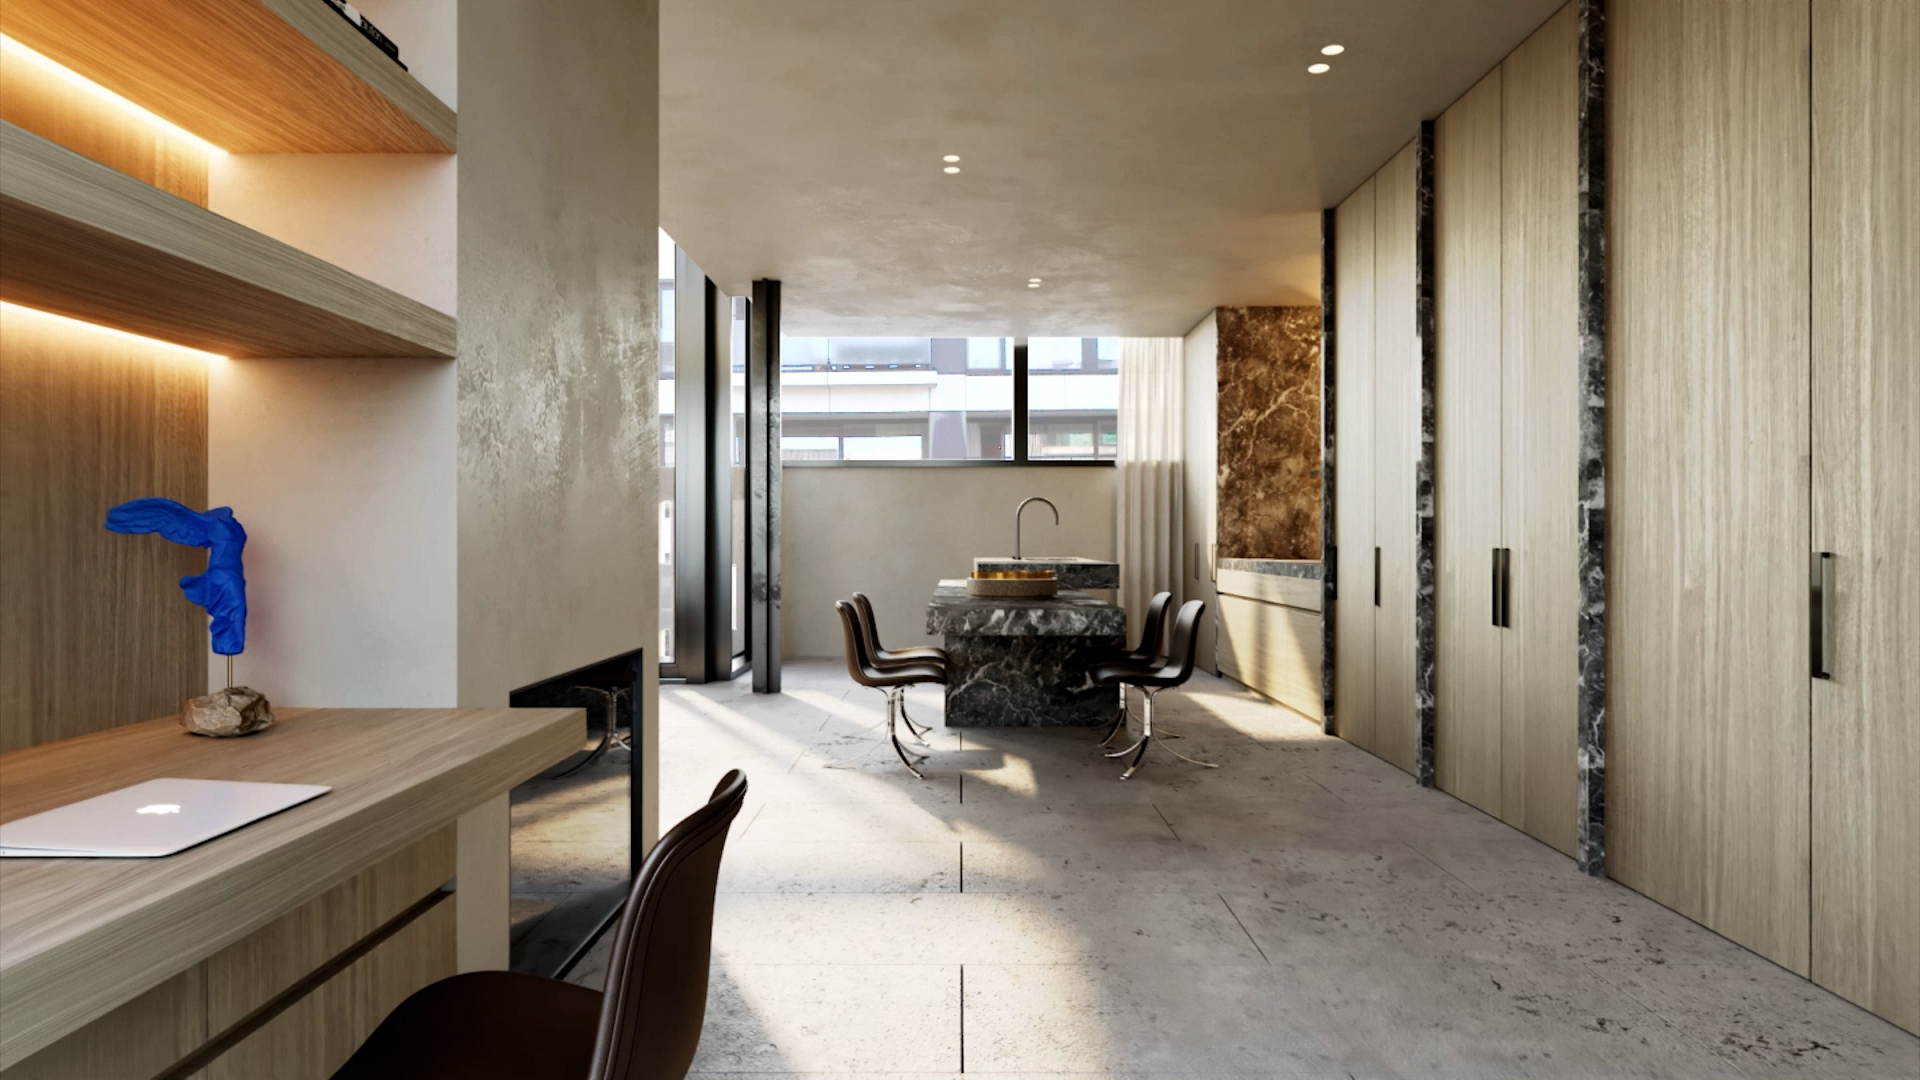 WJR Vertikal interior architecture by Eline Ostyn kitchen